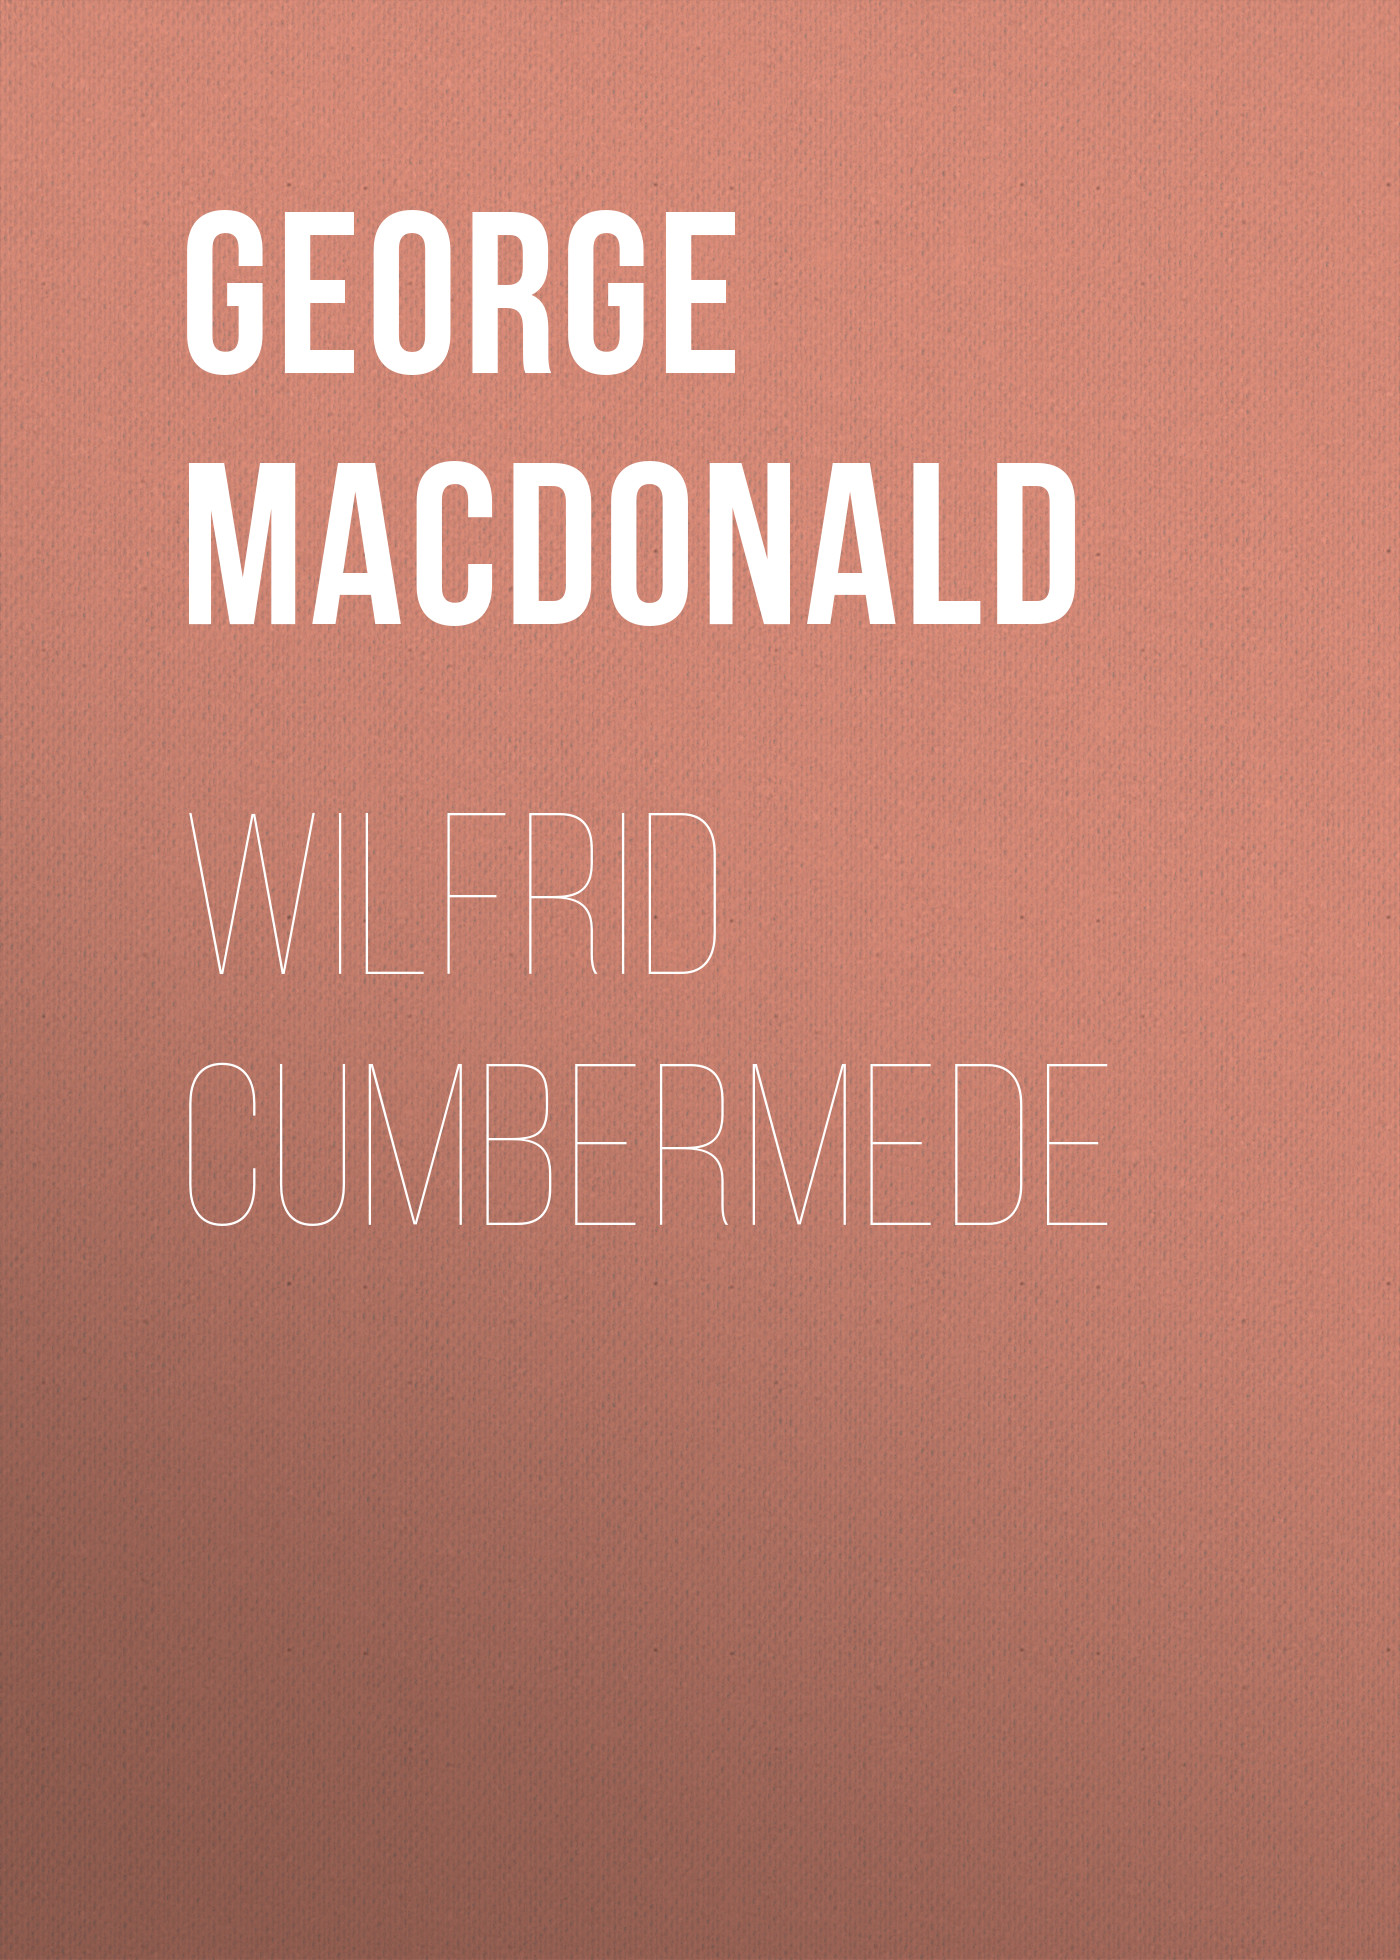 Книга Wilfrid Cumbermede из серии , созданная George MacDonald, может относится к жанру Зарубежная классика, Зарубежная эзотерическая и религиозная литература, Зарубежная старинная литература. Стоимость электронной книги Wilfrid Cumbermede с идентификатором 35007881 составляет 0 руб.